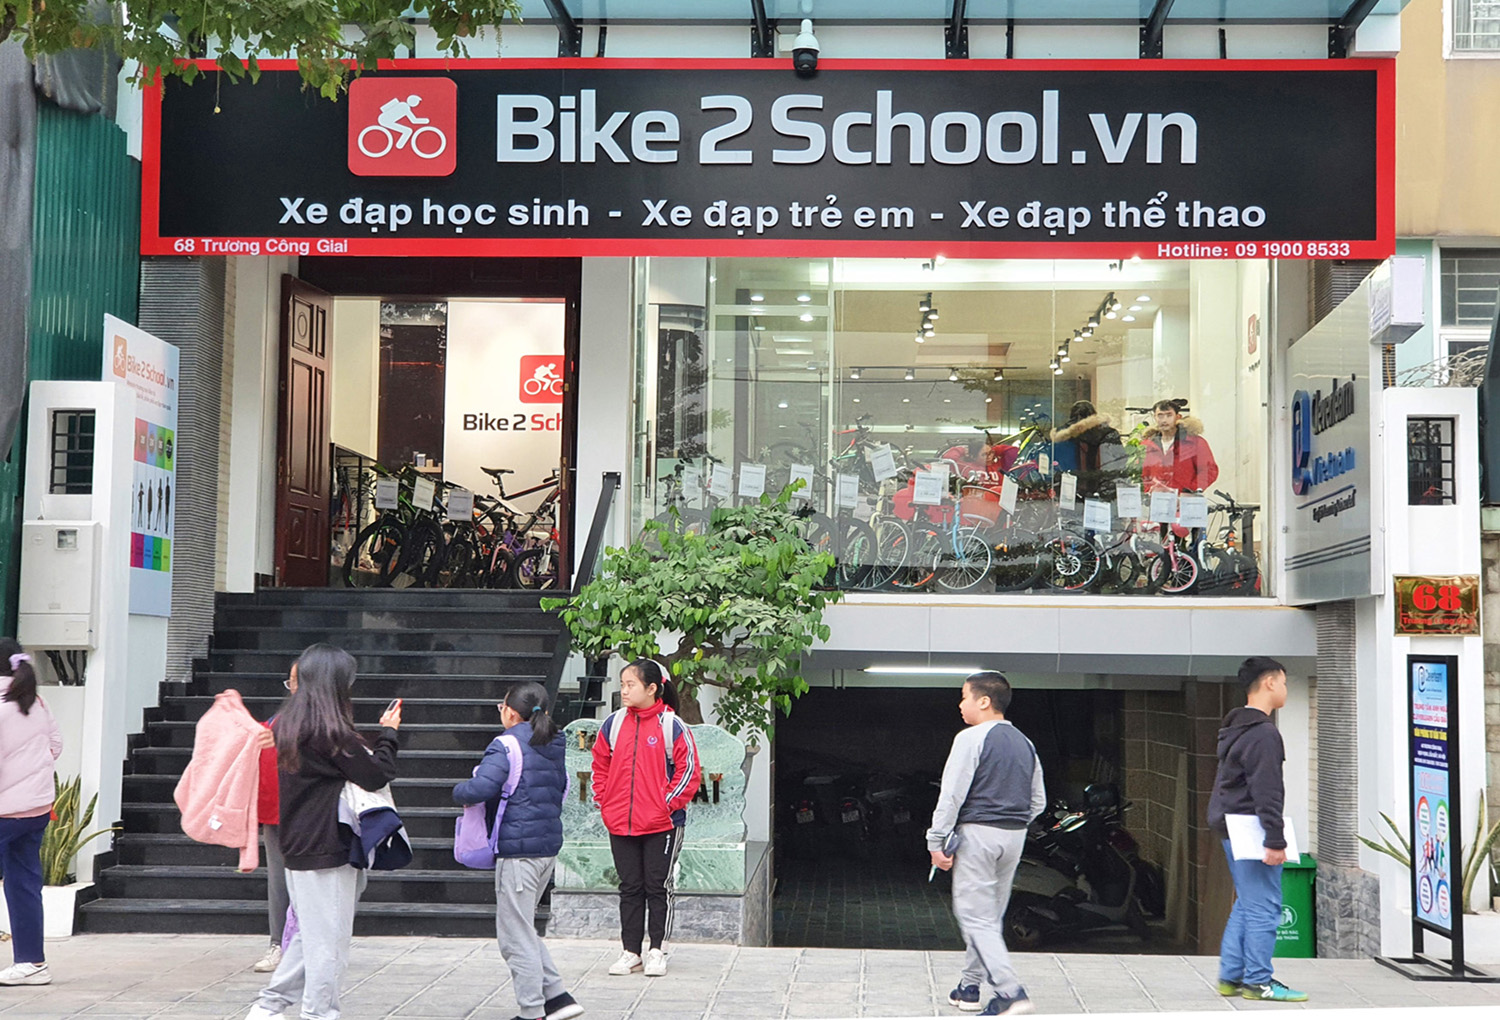 Cửa hàng Bike2school 68 Trương Công Giai